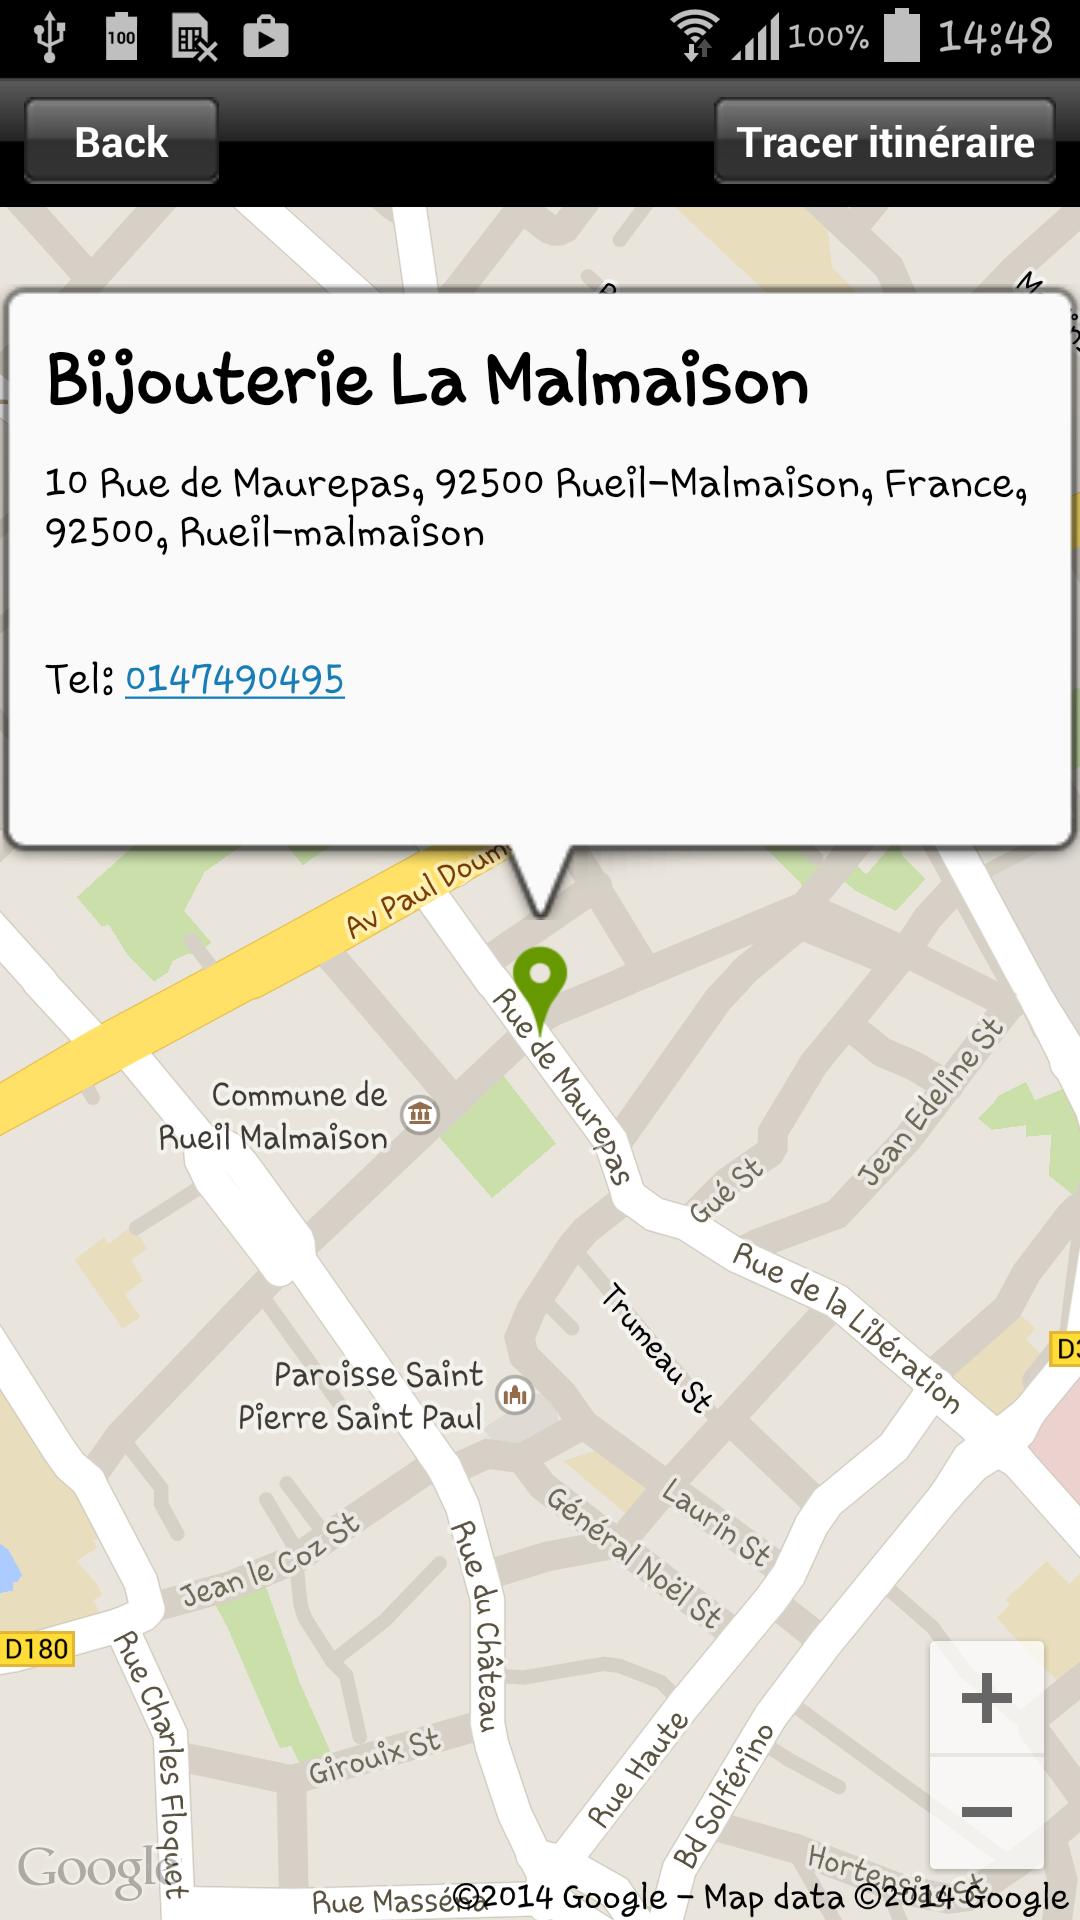 Bijouterie La Malmaison for Android - APK Download